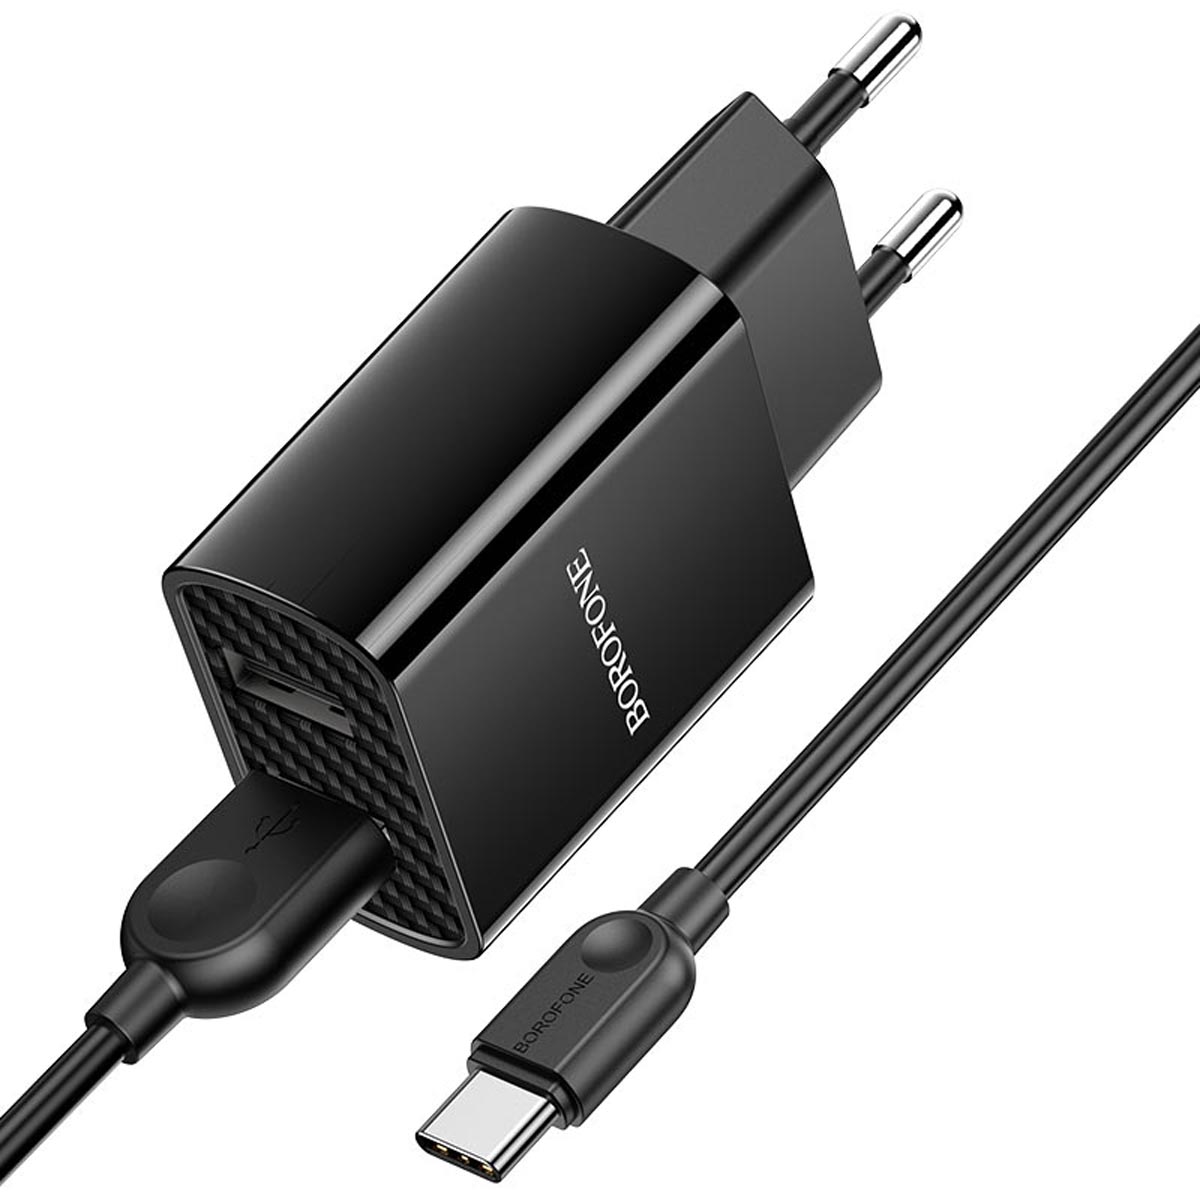 СЗУ (Сетевое зарядное устройство) BOROFONE BA53A Powerway с кабелем USB Type C, 2.1А, длина 1 метр, цвет черный